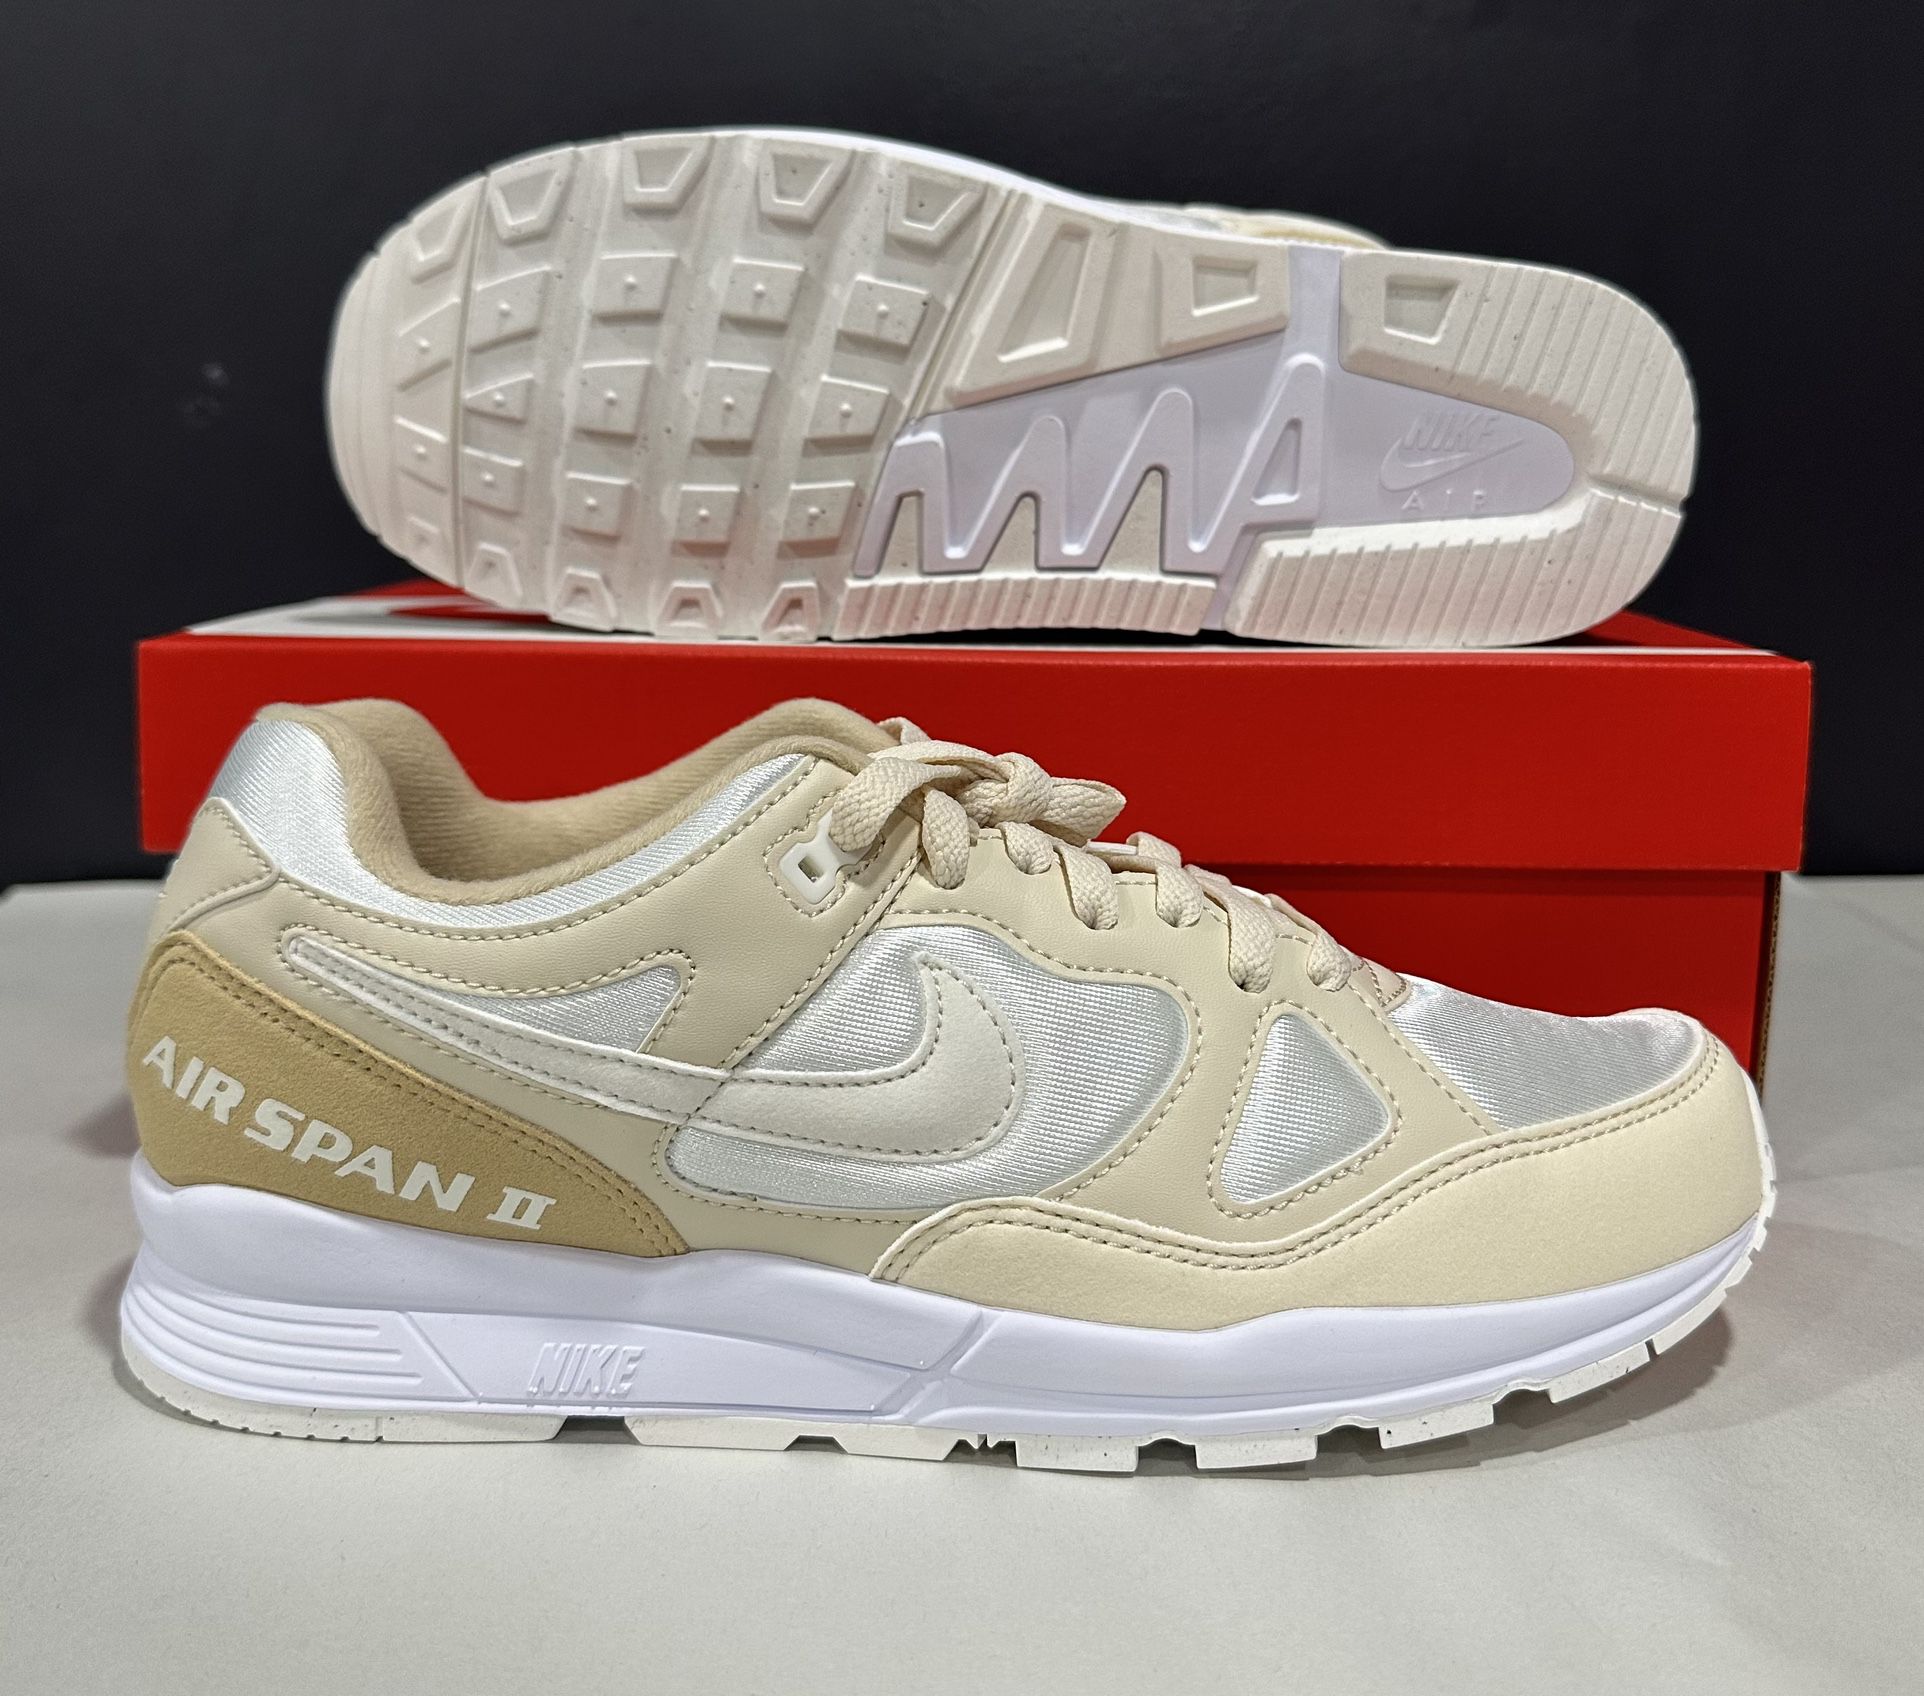 Men Nike Air Span II SU19 Athletic Shoes Desert Ore/Sail/Light Cream BQ8164-200